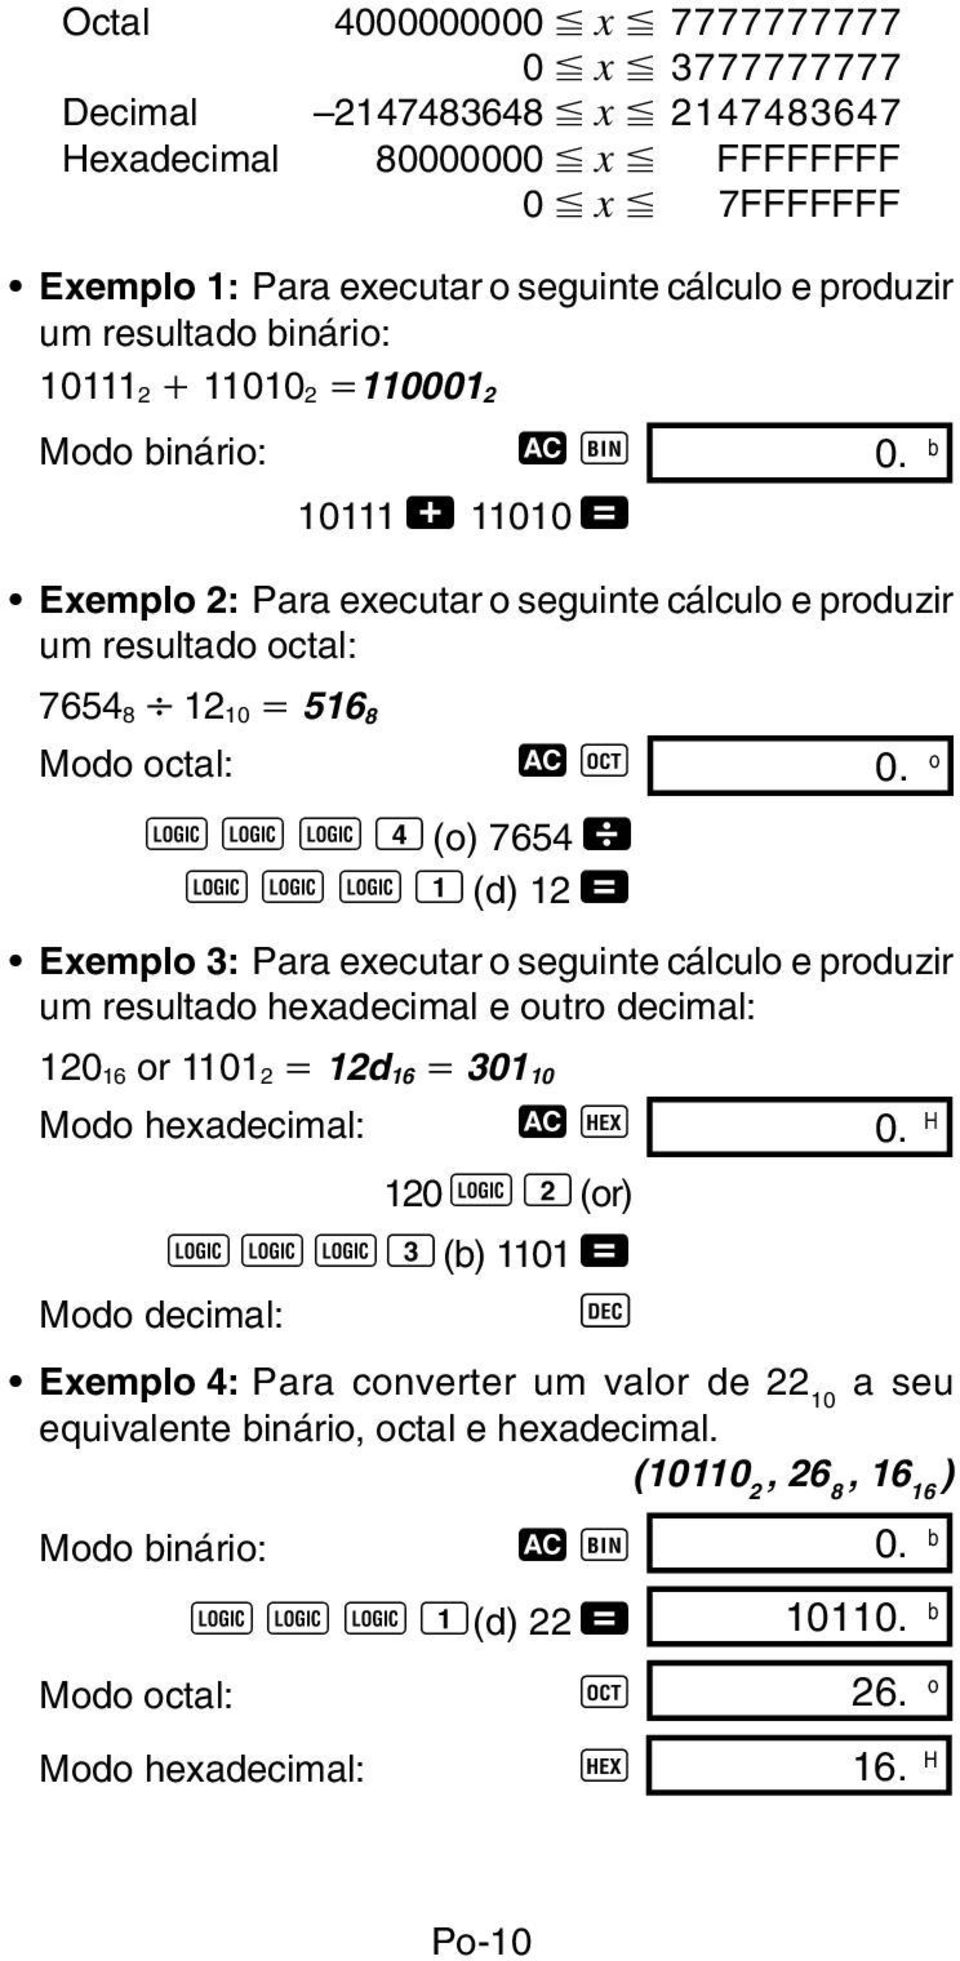 o l l l 4 (o) 7654 \ l l l 1 (d) 12 = Exemplo 3: Para executar o seguinte cálculo e produzir um resultado hexadecimal e outro decimal: 120 16 or 1101 2 12d 16 301 10 Modo hexadecimal: t h 0.